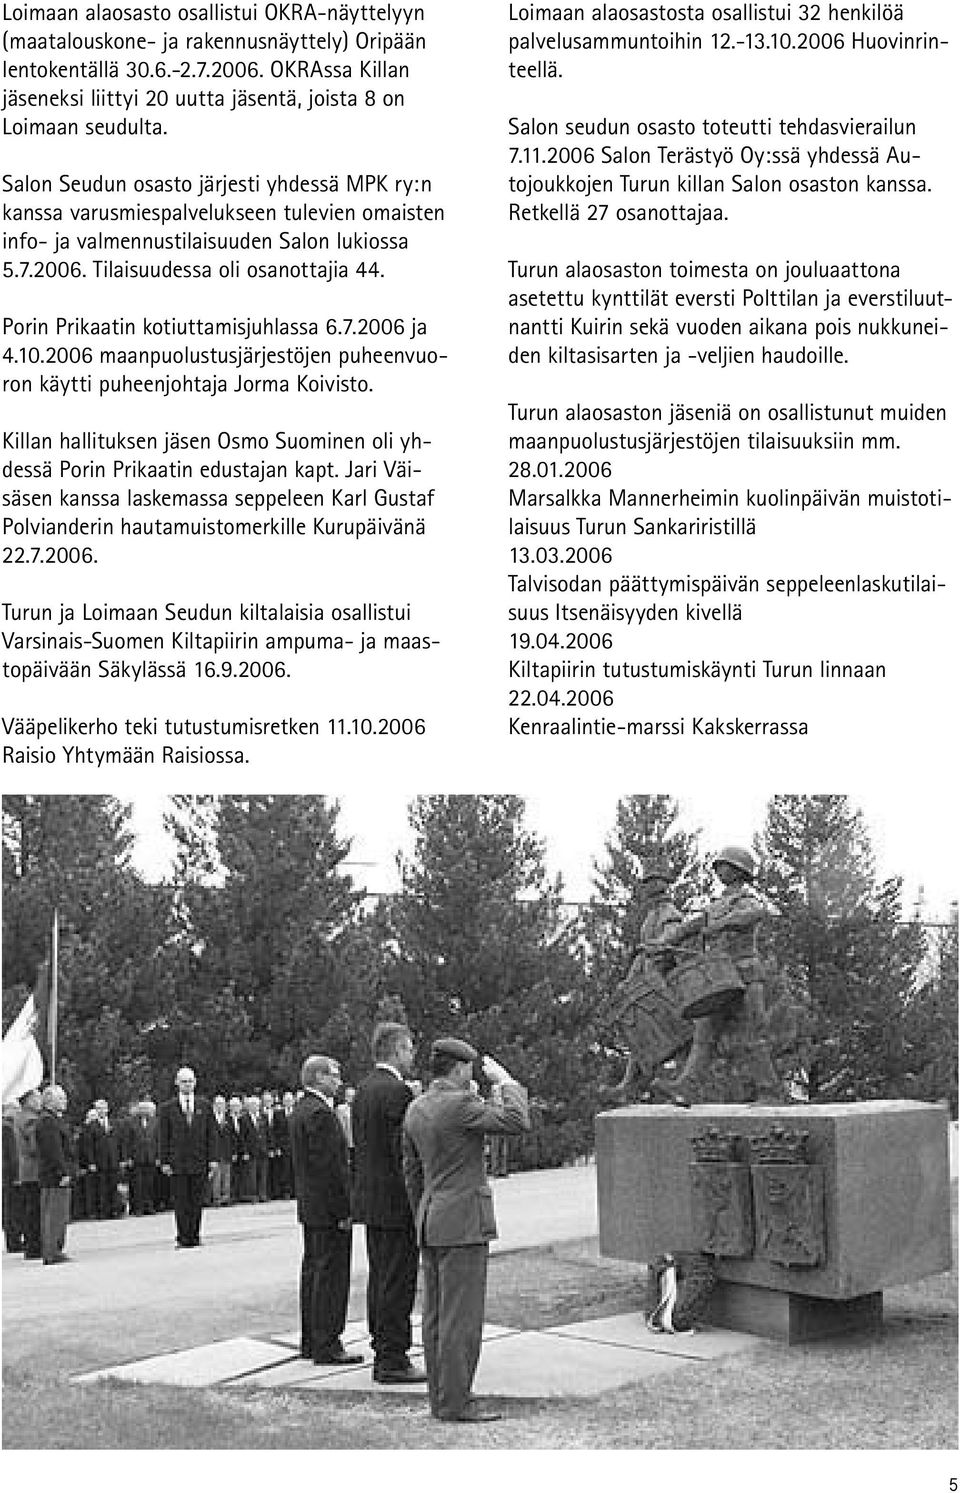 Porin Prikaatin kotiuttamisjuhlassa 6.7.2006 ja 4.10.2006 maanpuolustusjärjestöjen puheenvuoron käytti puheenjohtaja Jorma Koivisto.